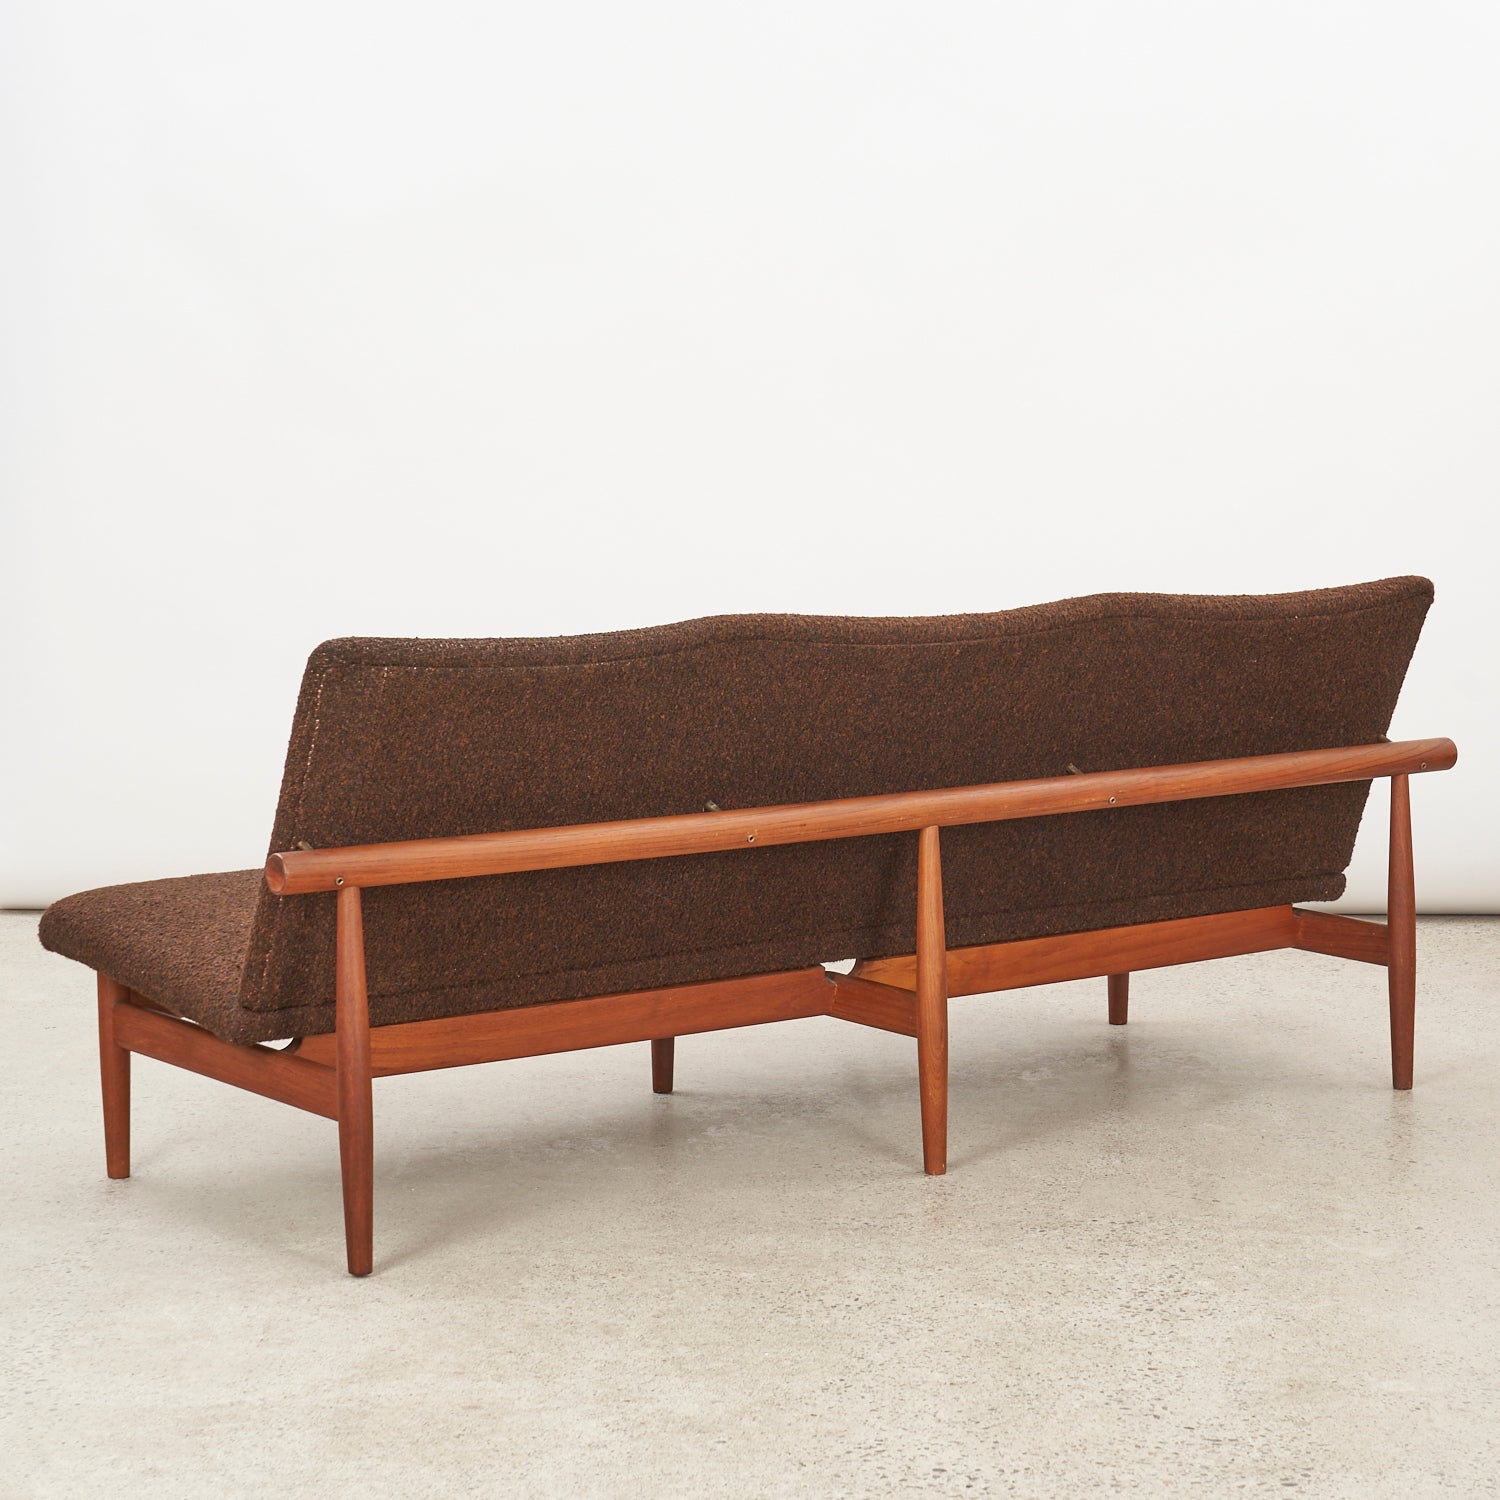 Teak 'Japan' Sofa by Finn Juhl for France & Daverkosen, Denmark